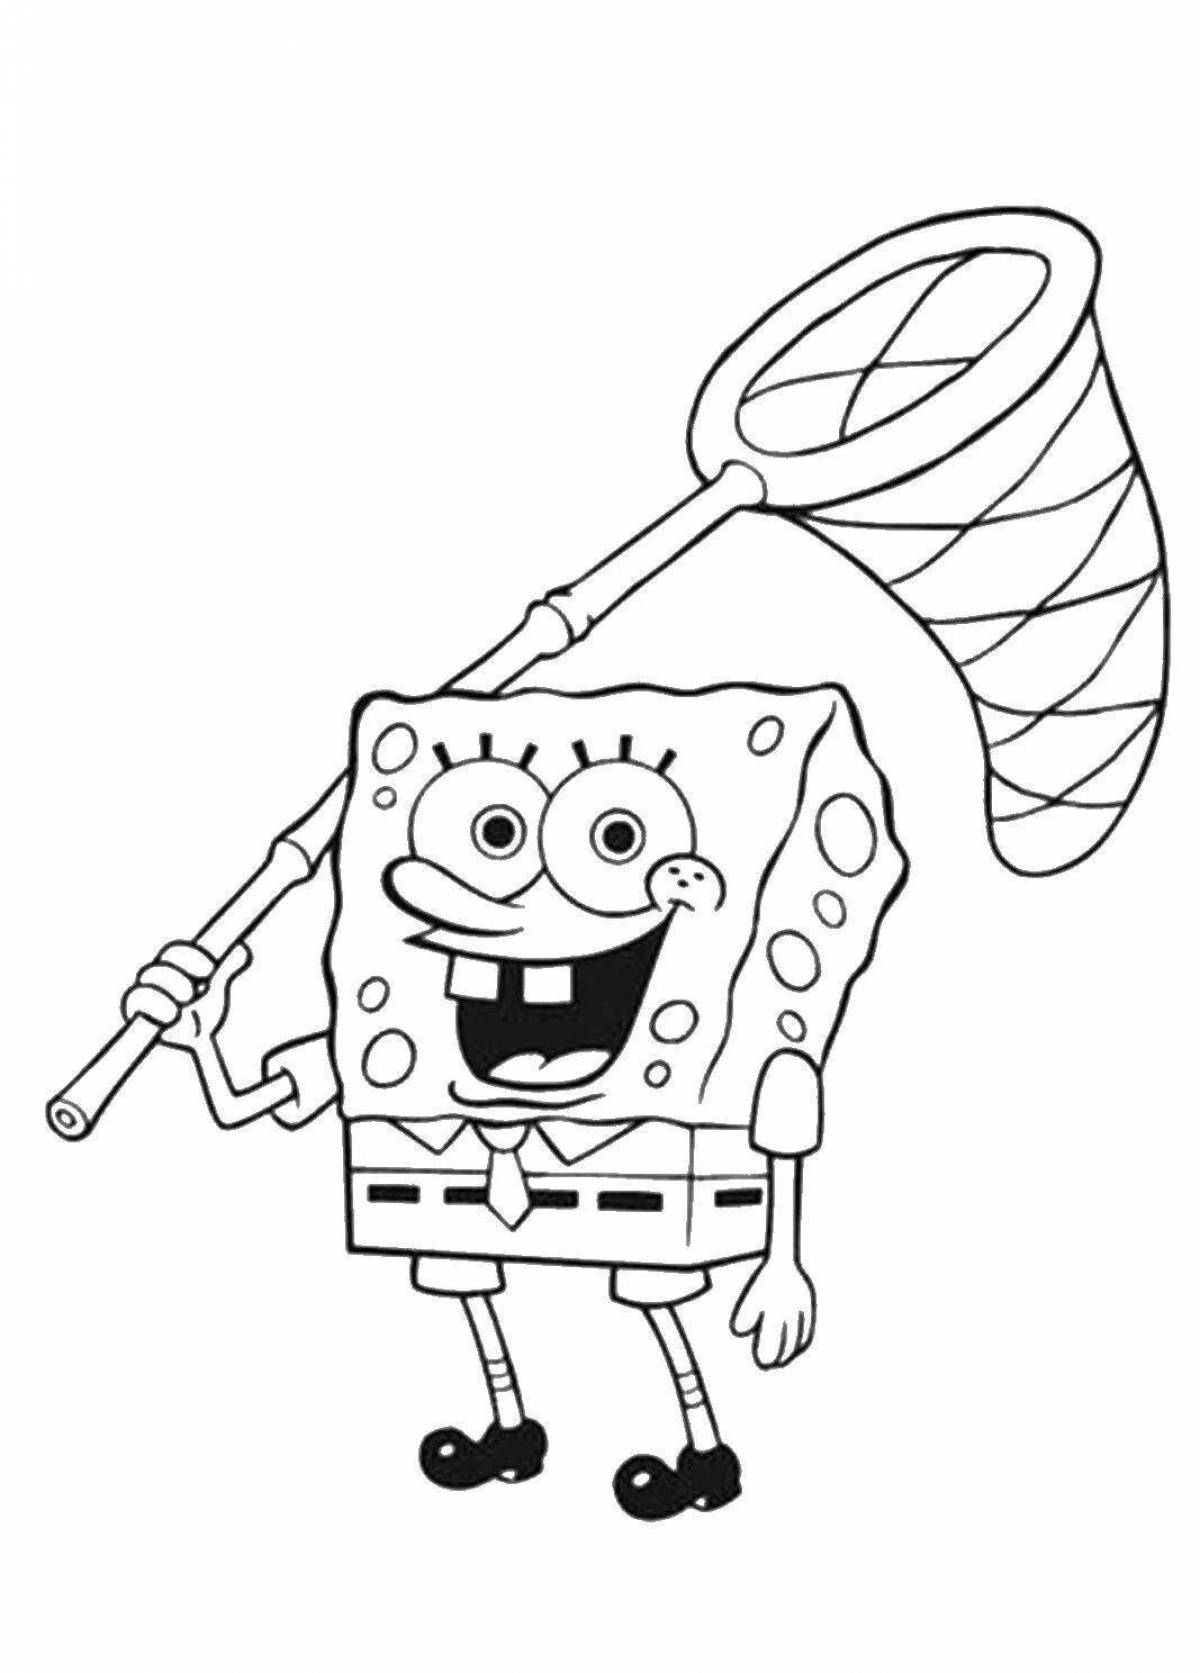 Spongebob glamor coloring